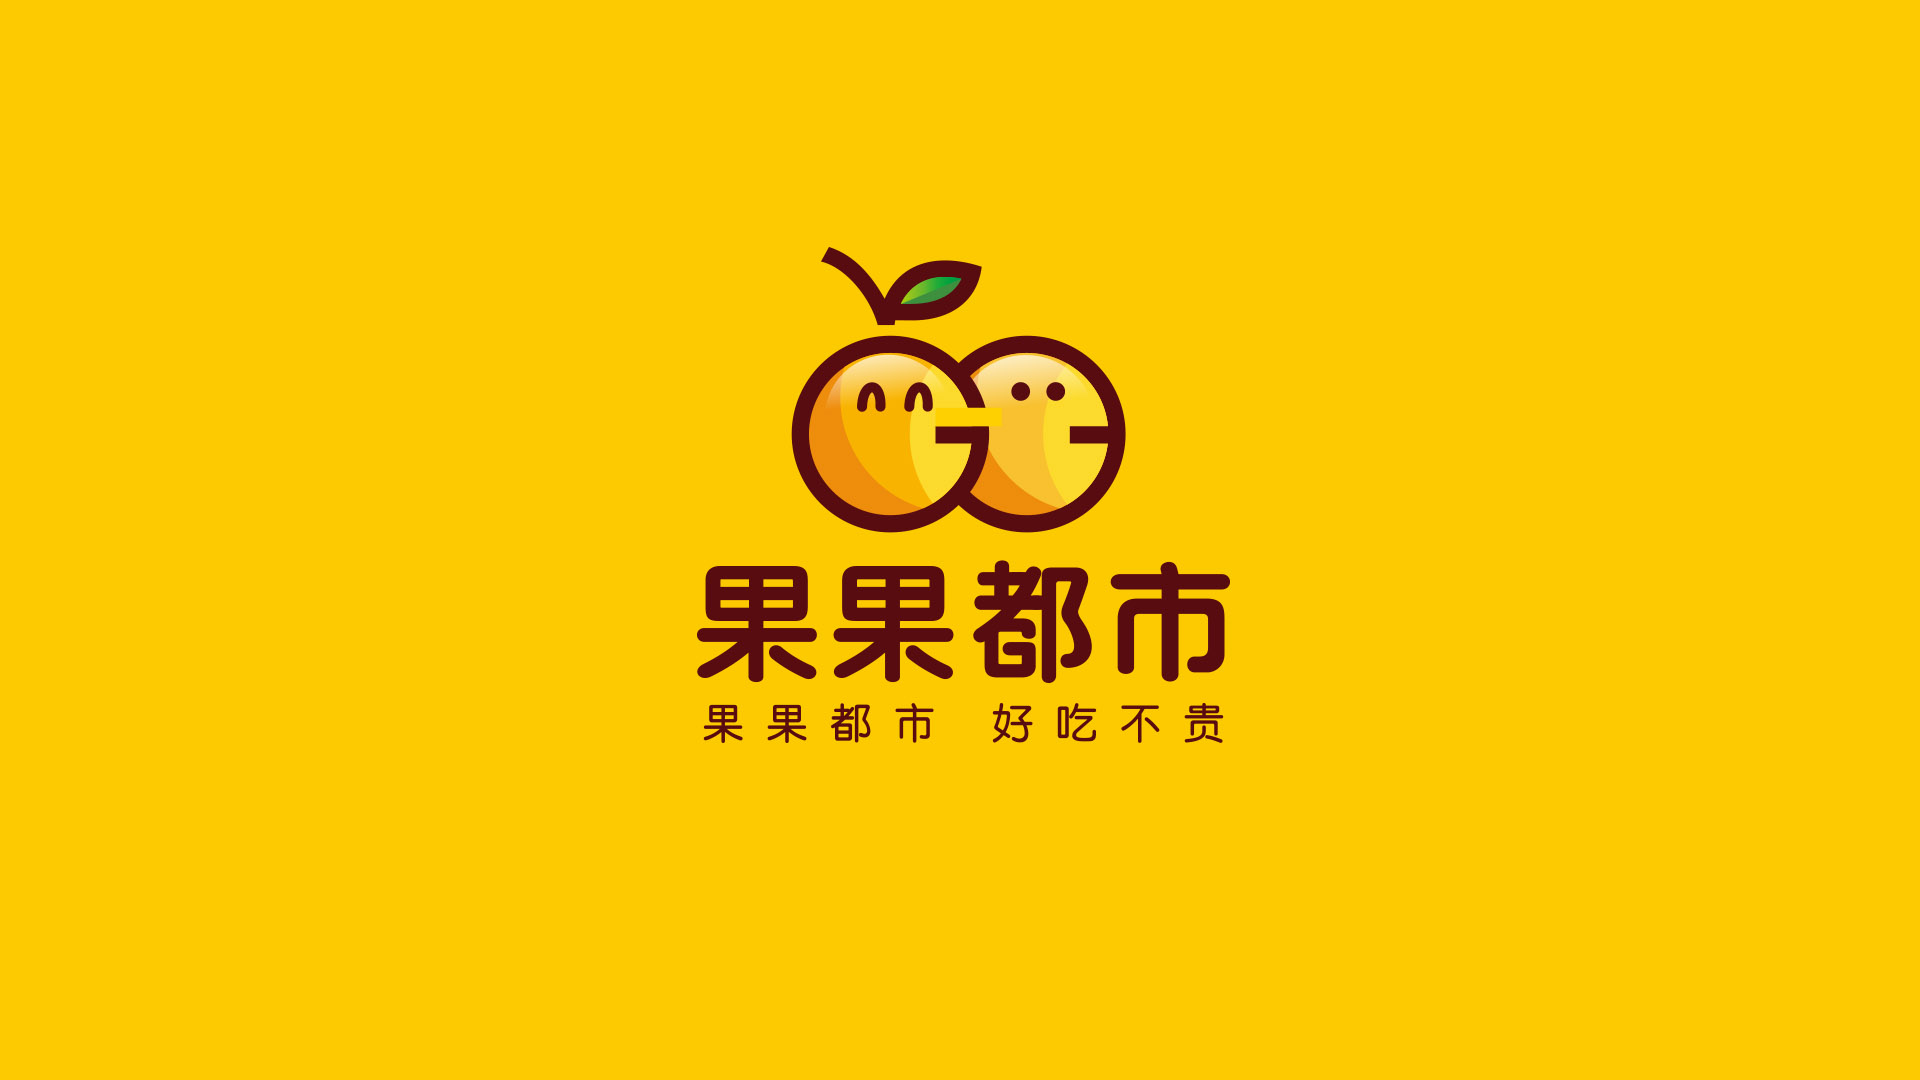 水果商貿類logo設計